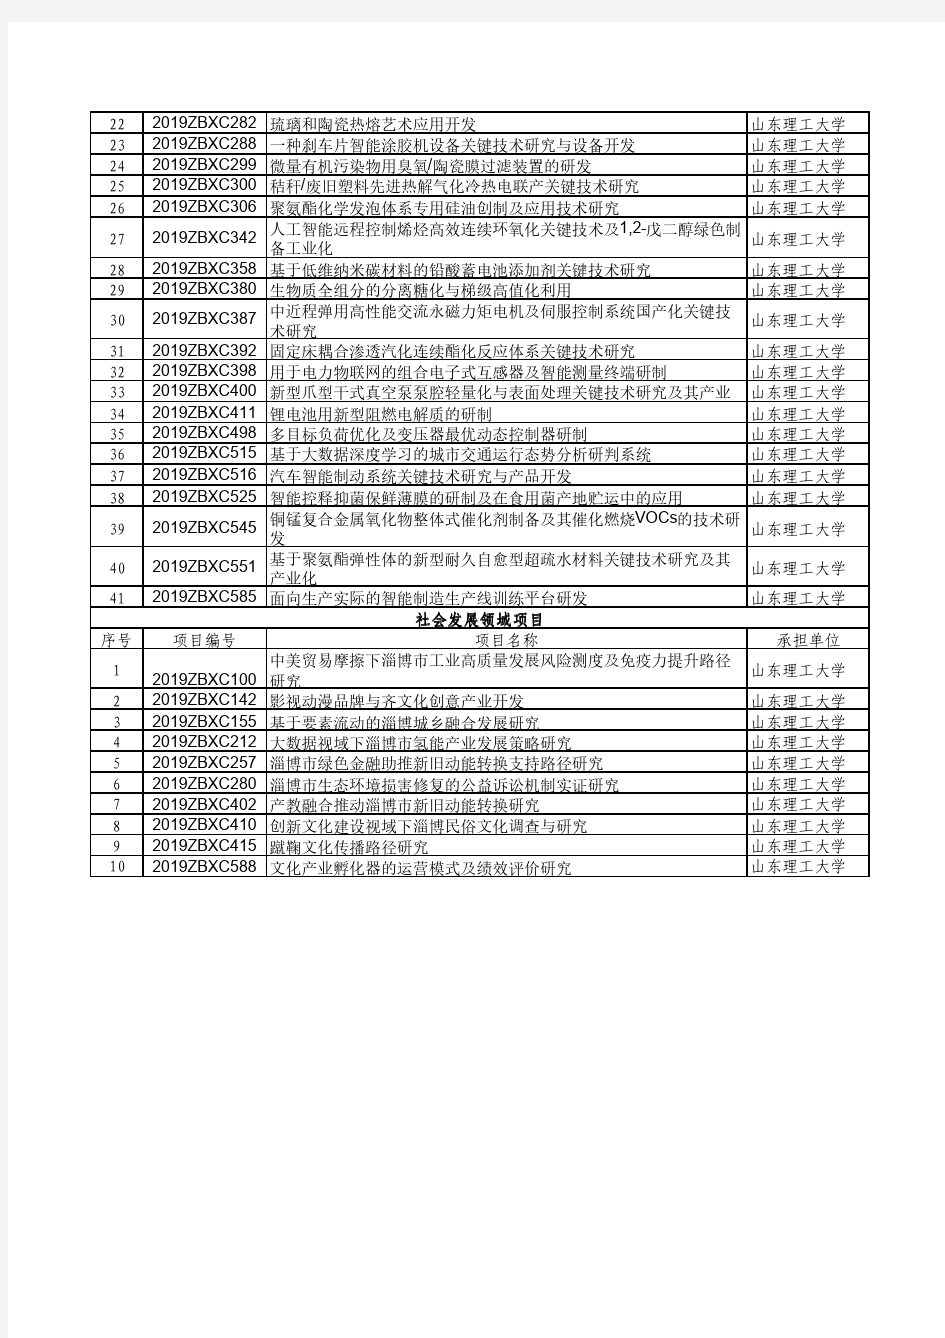 2019年淄博市重点研发计划(校城融合发展类)项目表